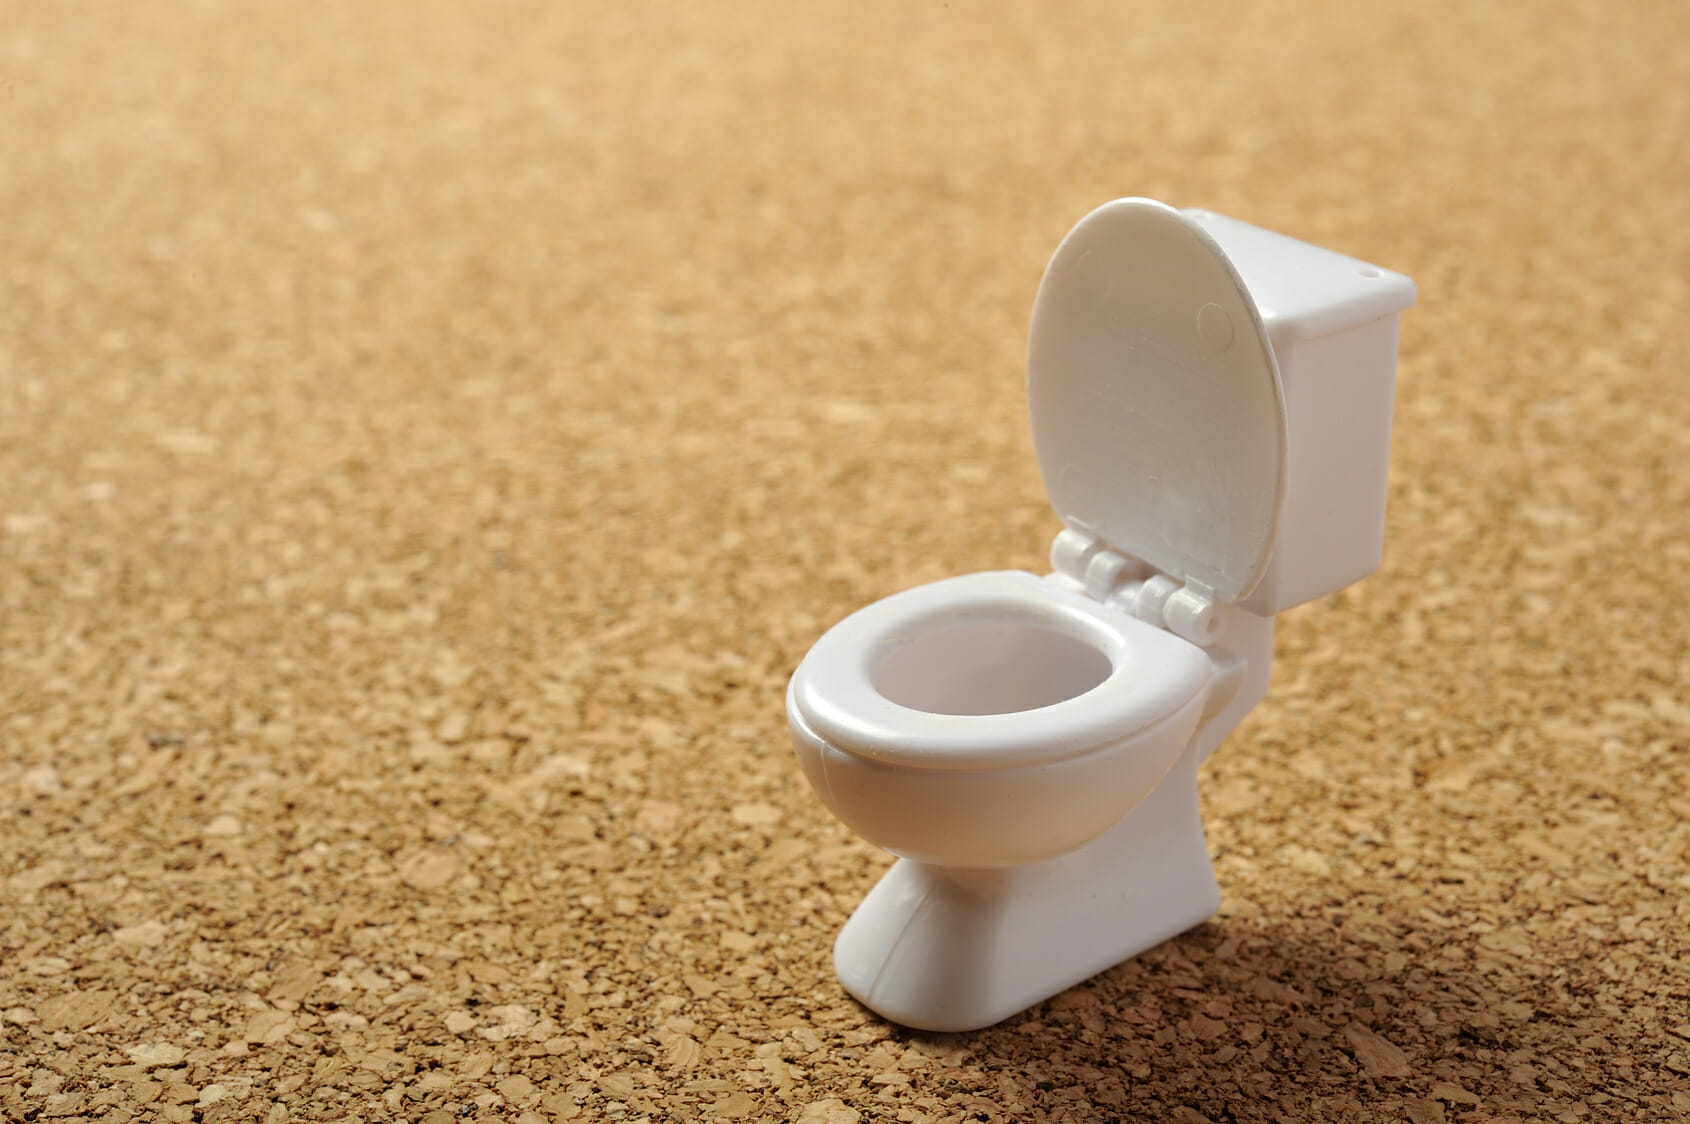 トイレつまりの様々な原因とその直し方 トイレのトラブルドクター / トイレつまりの対処法トイレのトラブルドクター